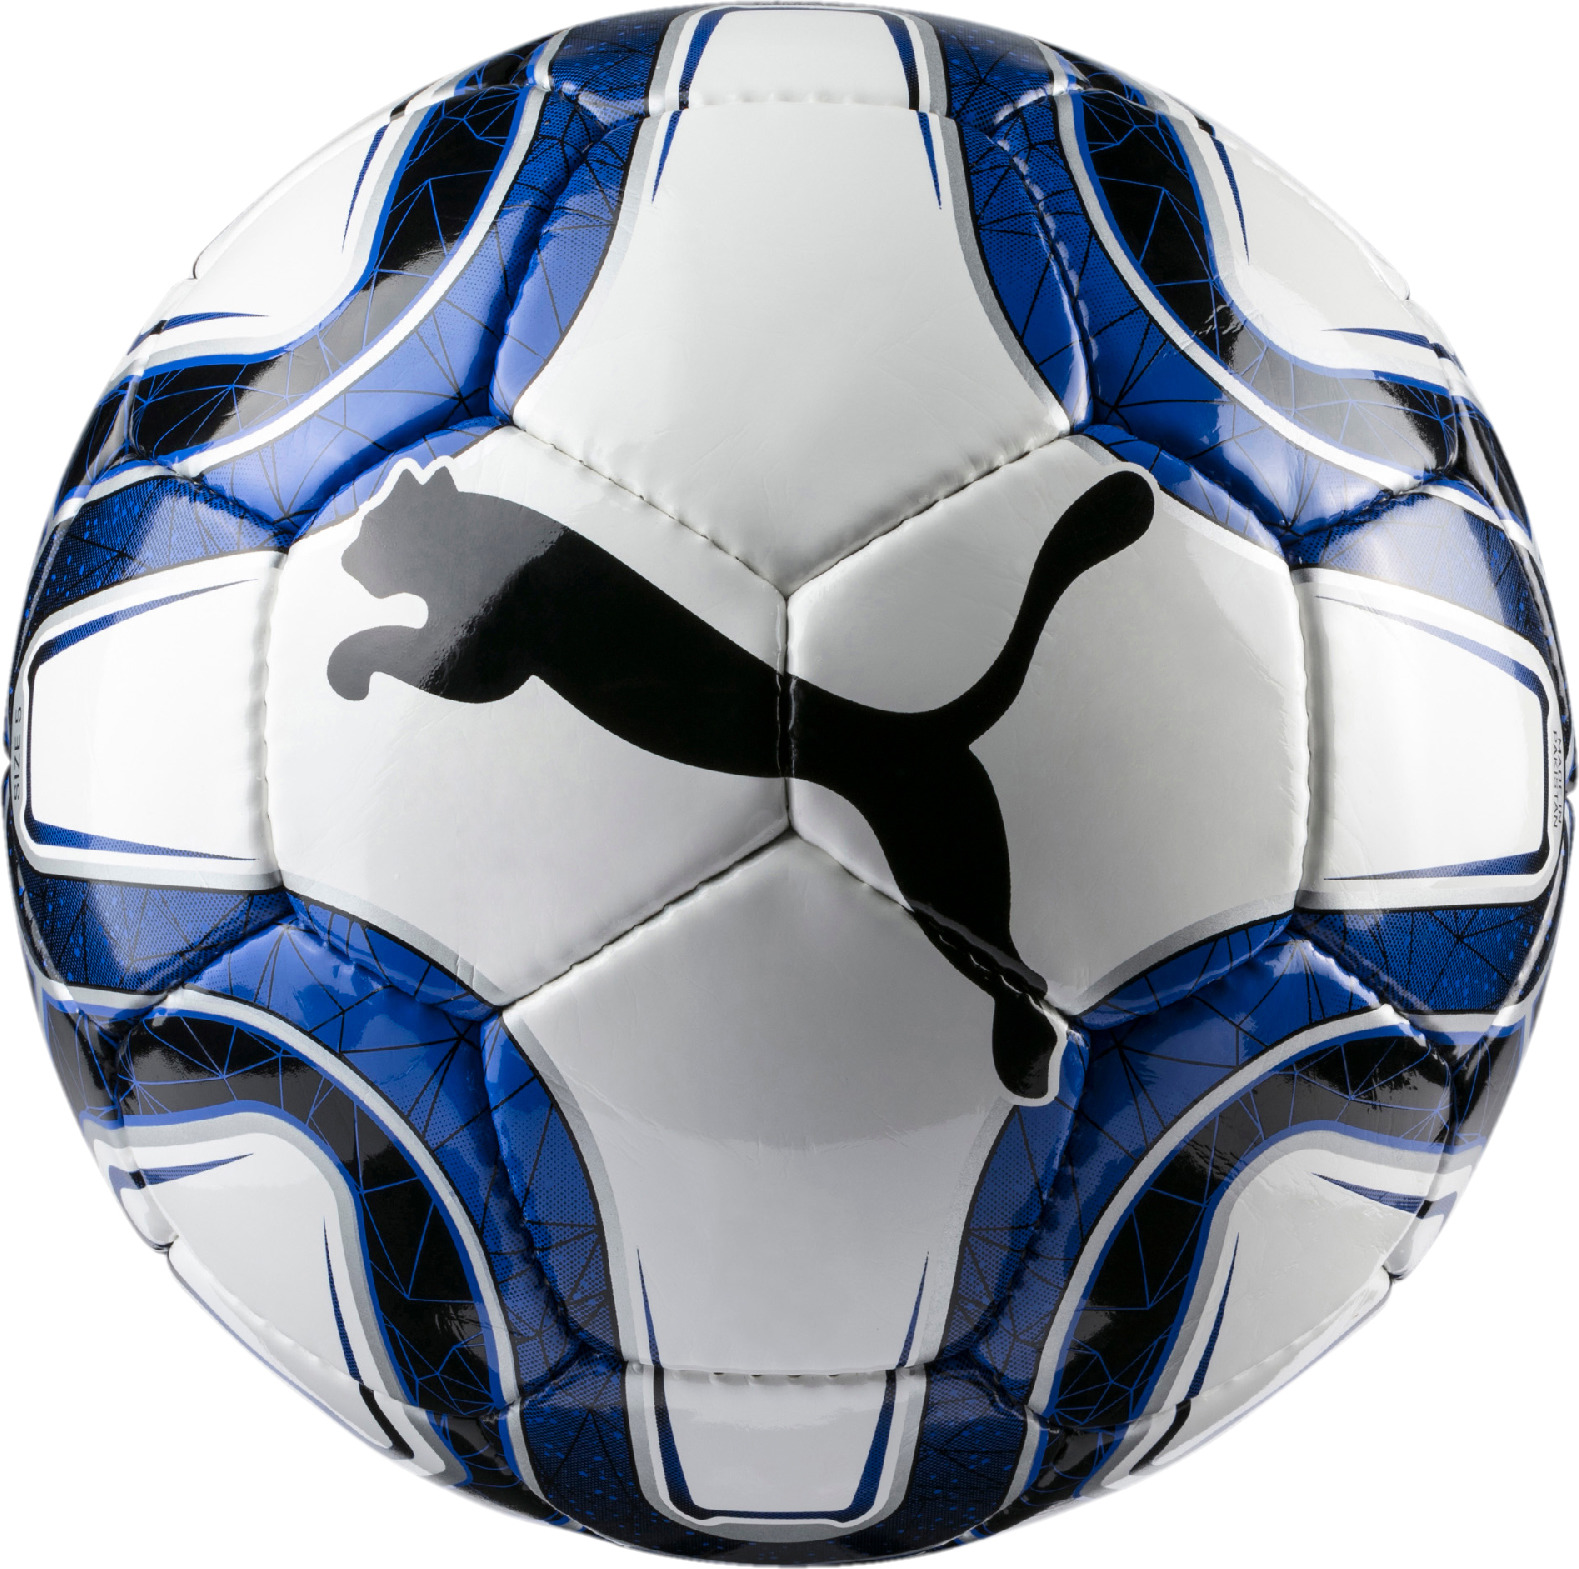 Мяч футбольный Puma Final 5 HS Trainer, цвет: белый, синий. Размер 5